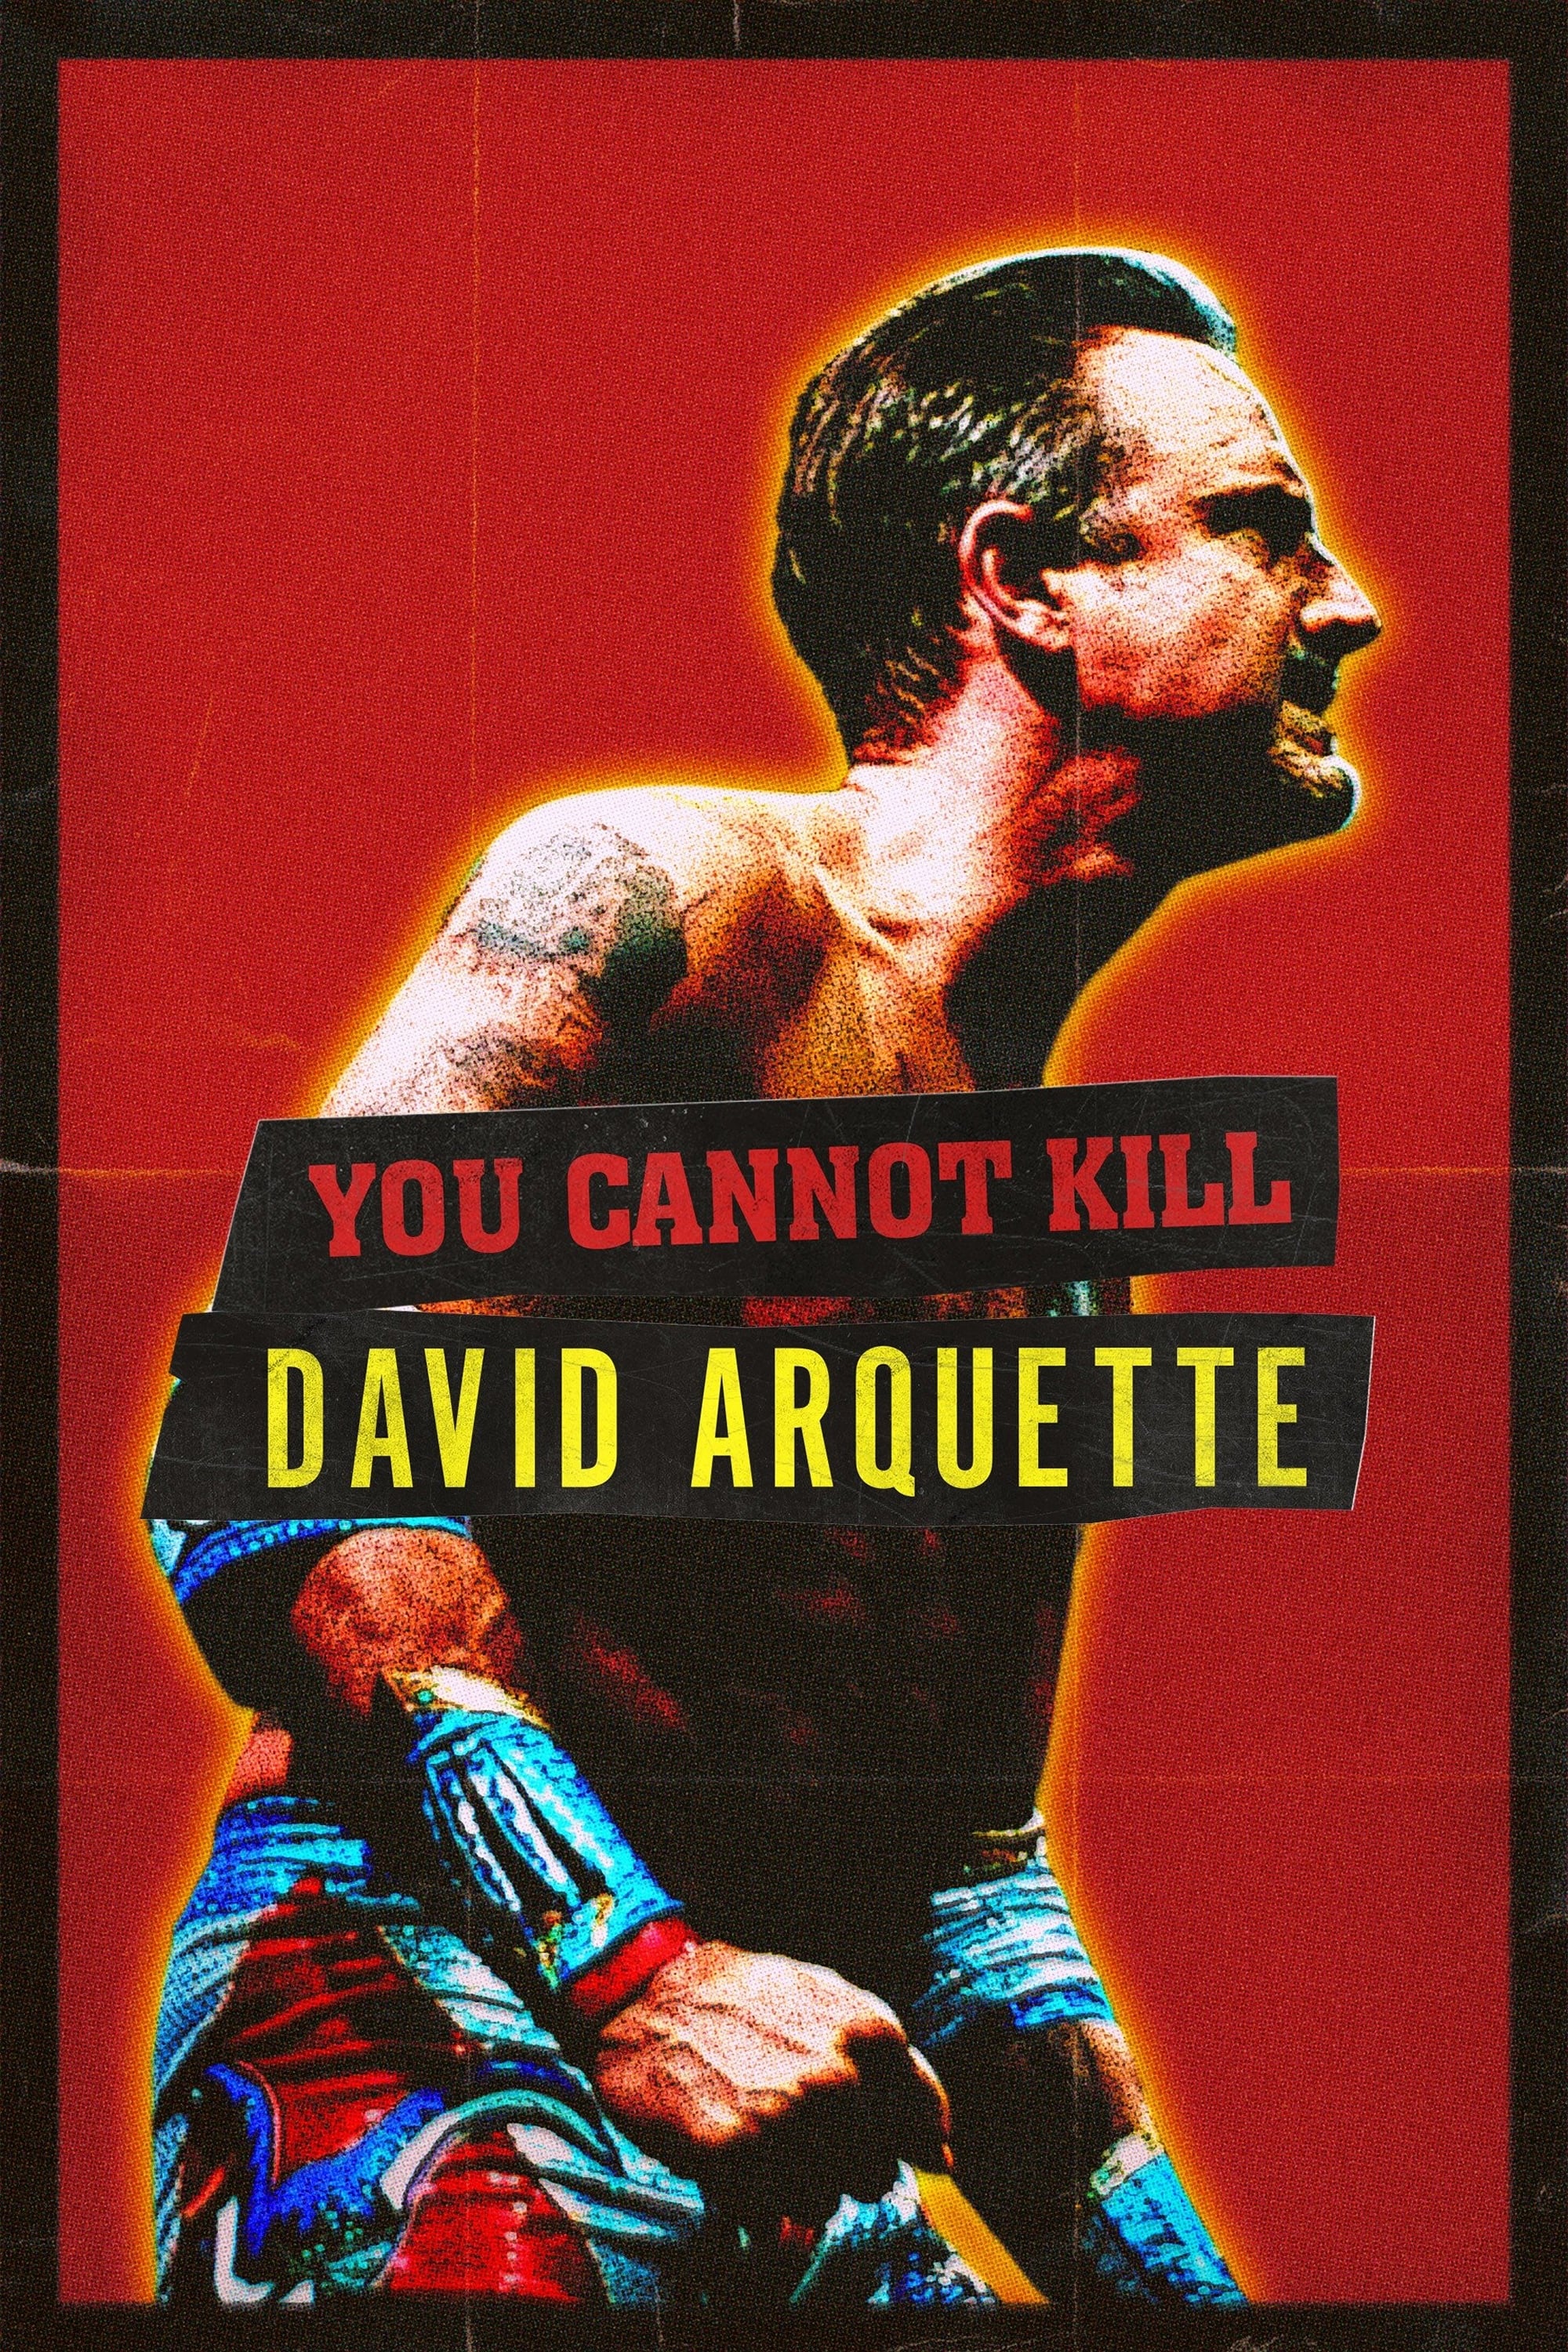 No podréis matar a David Arquette